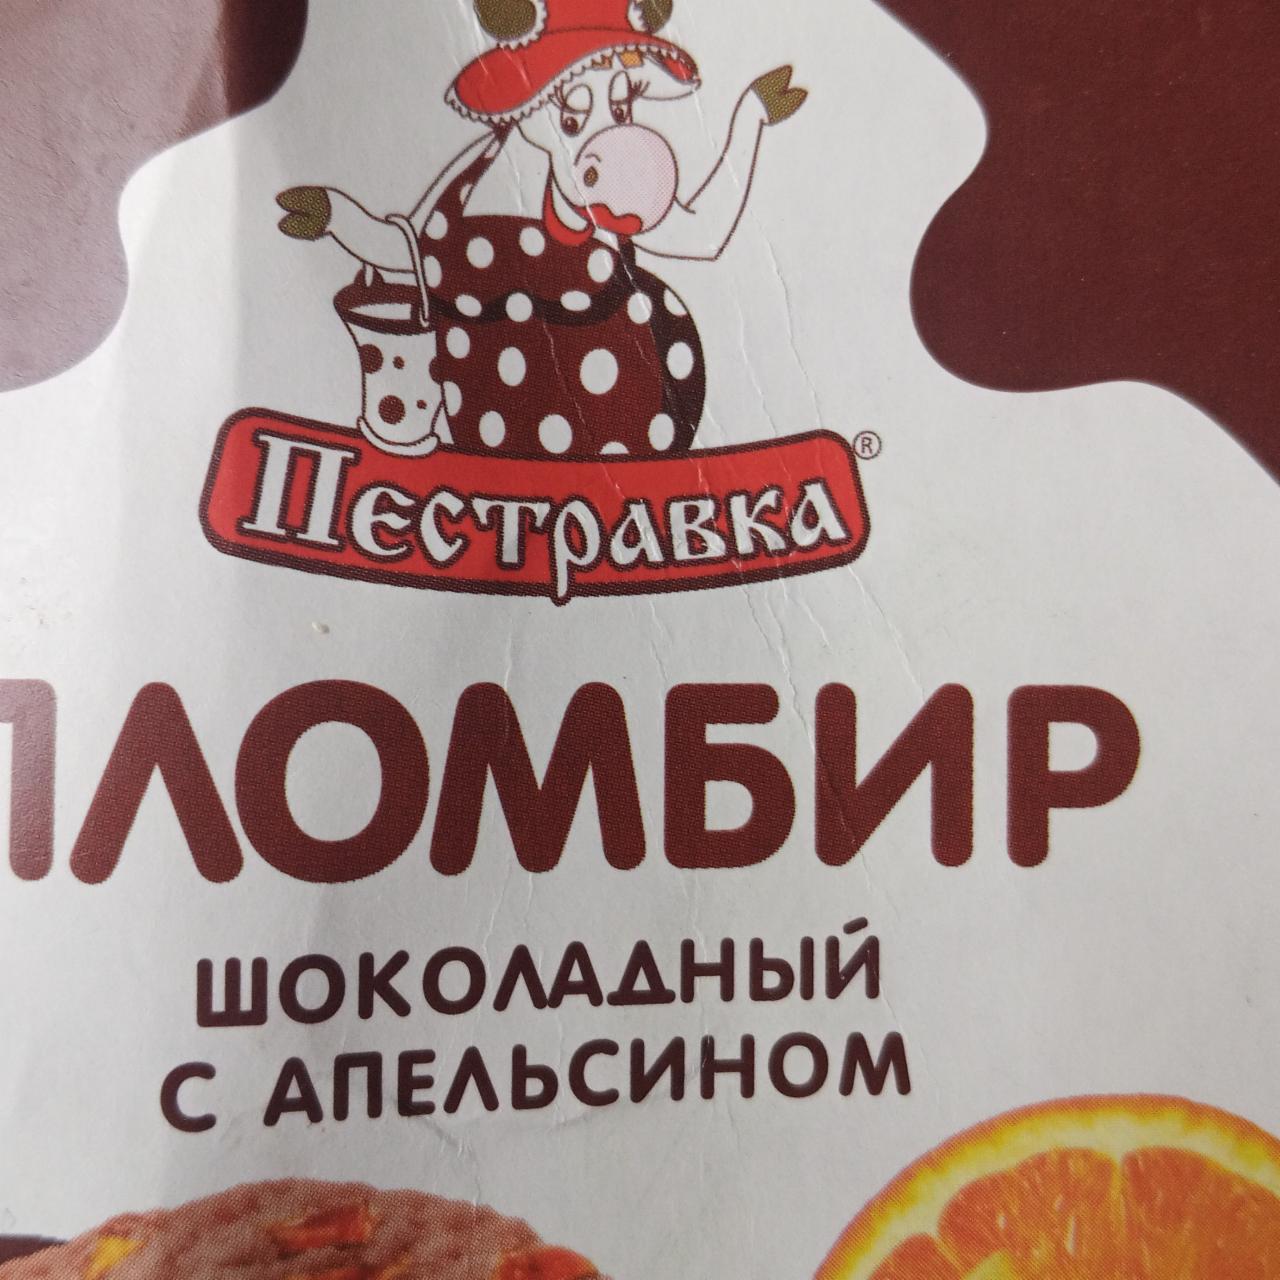 Фото - Пломбир шоколадный с апельсином Пестравка